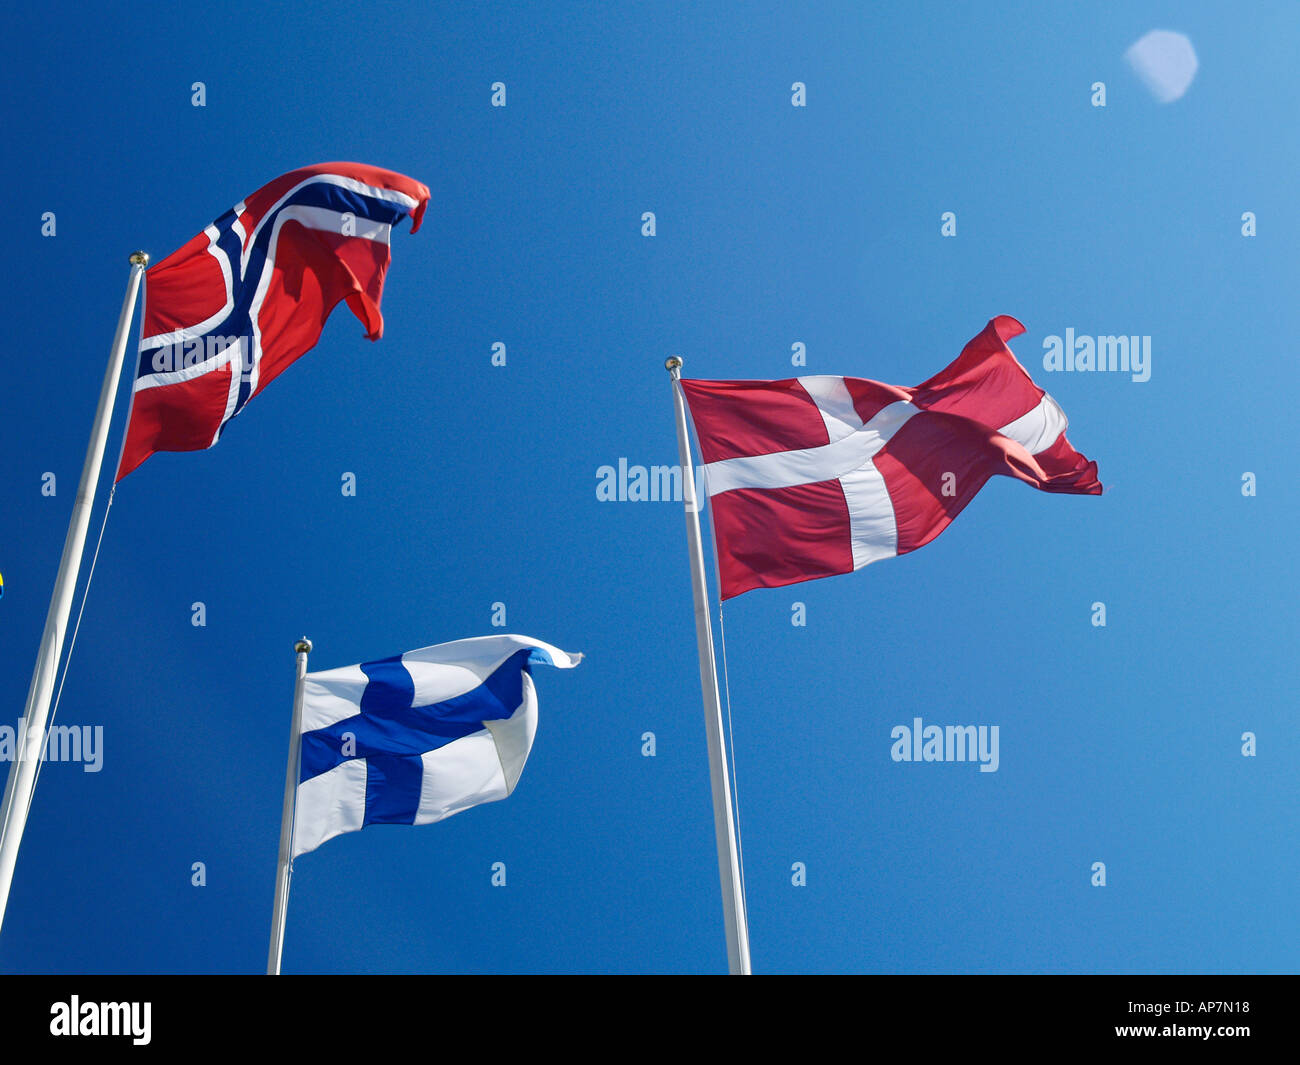 Flaggen der nordischen Länder, Norwegen, Dänemark, Finnland Stockfoto